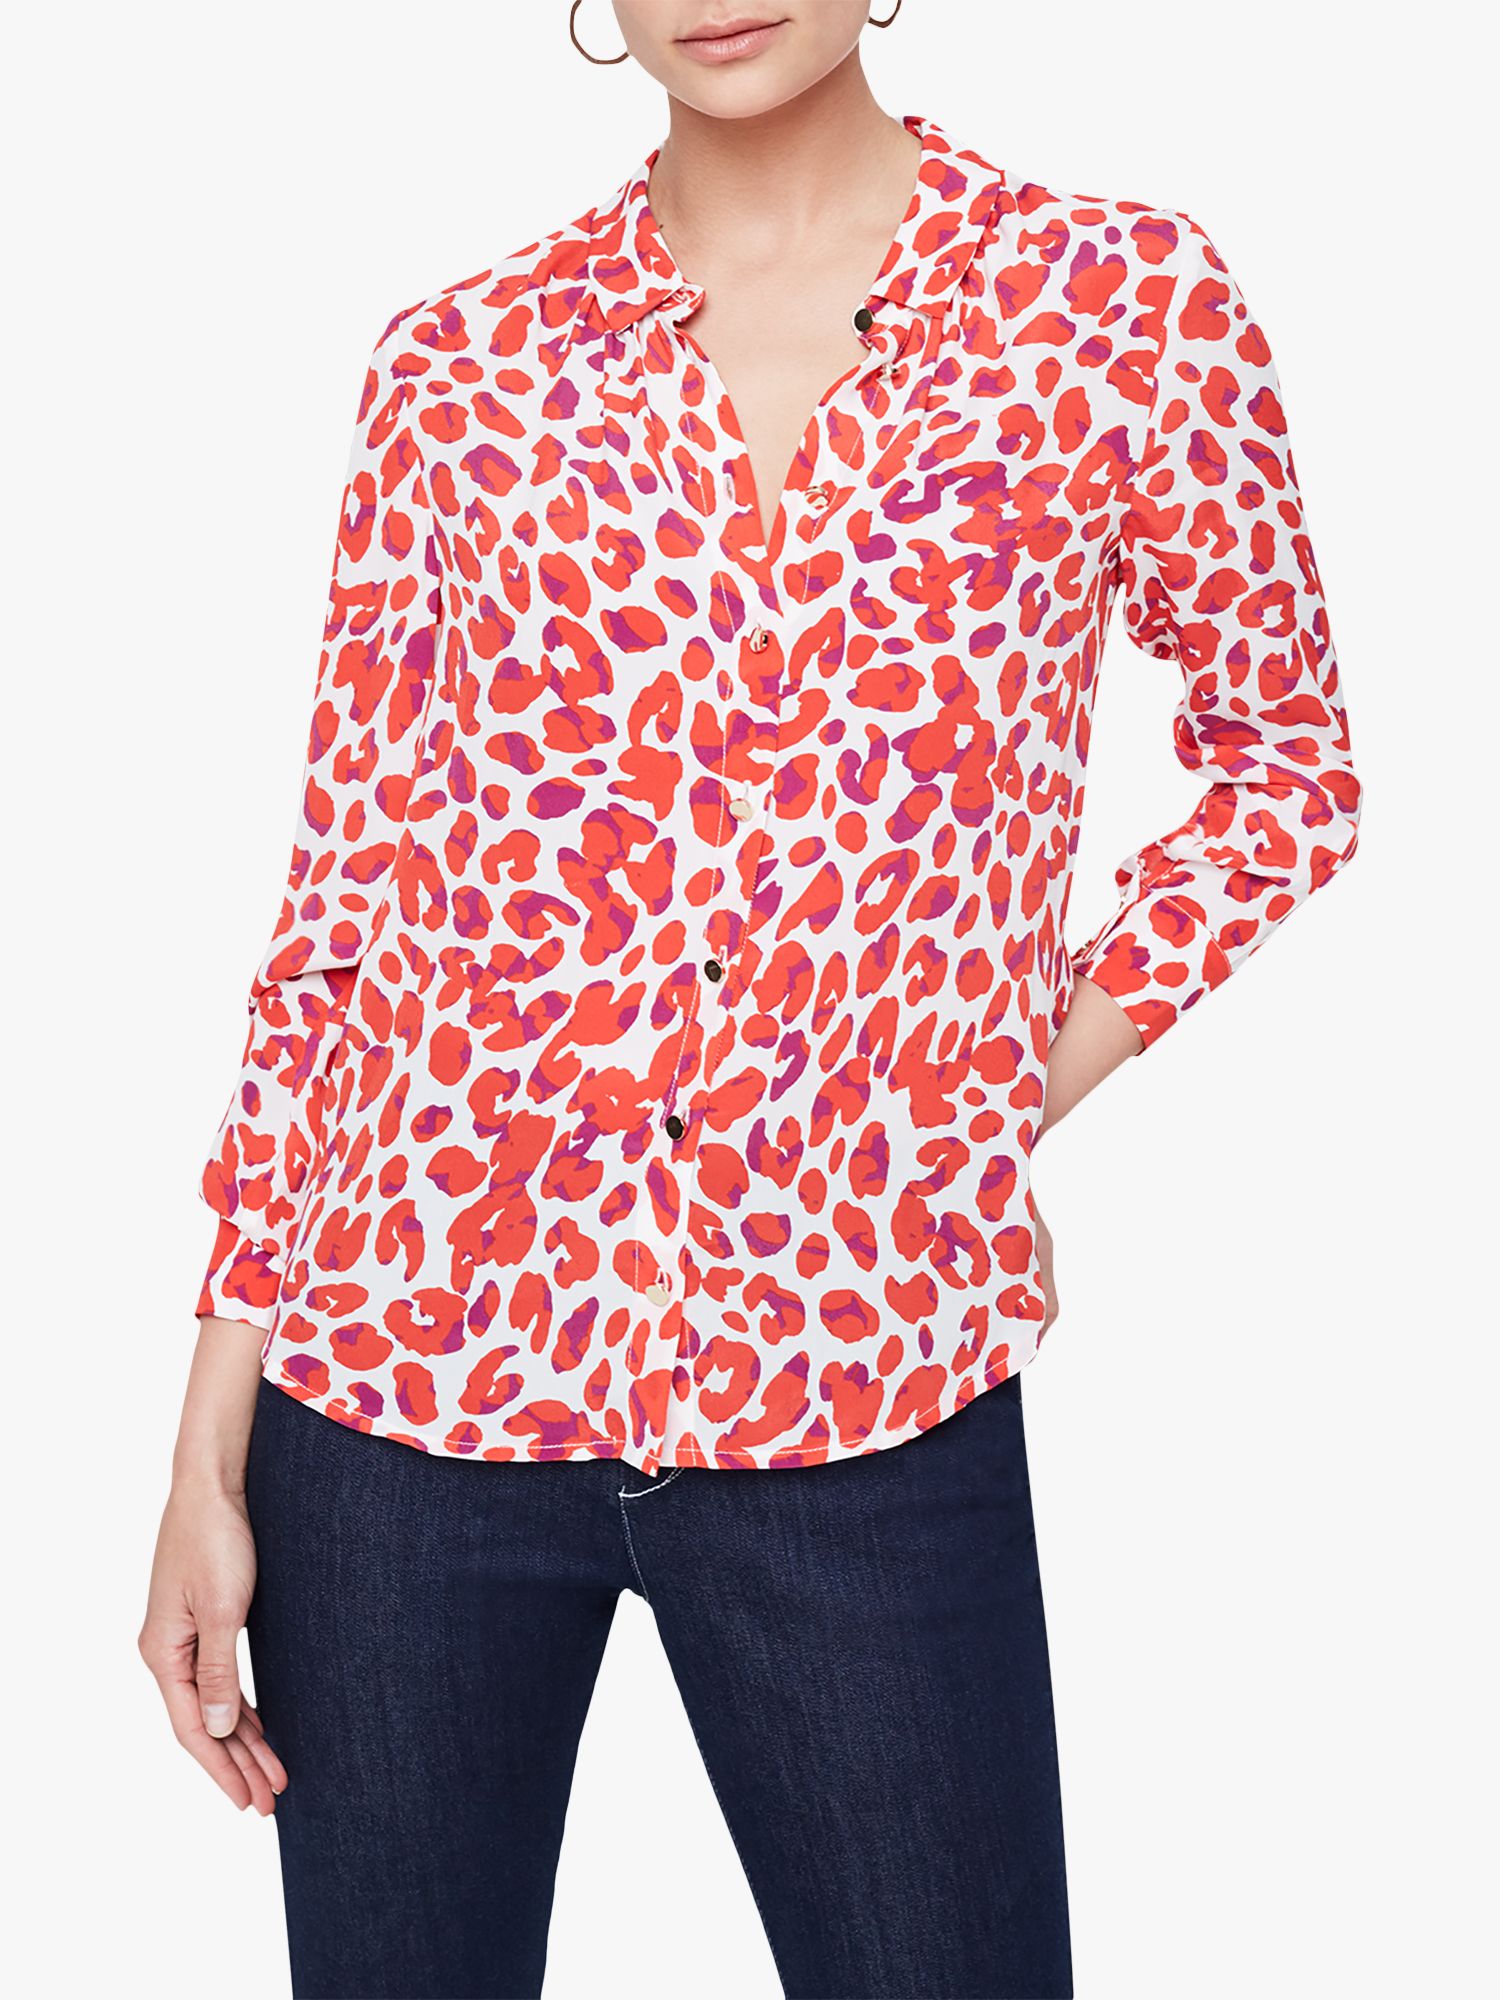 leopard blouse dress